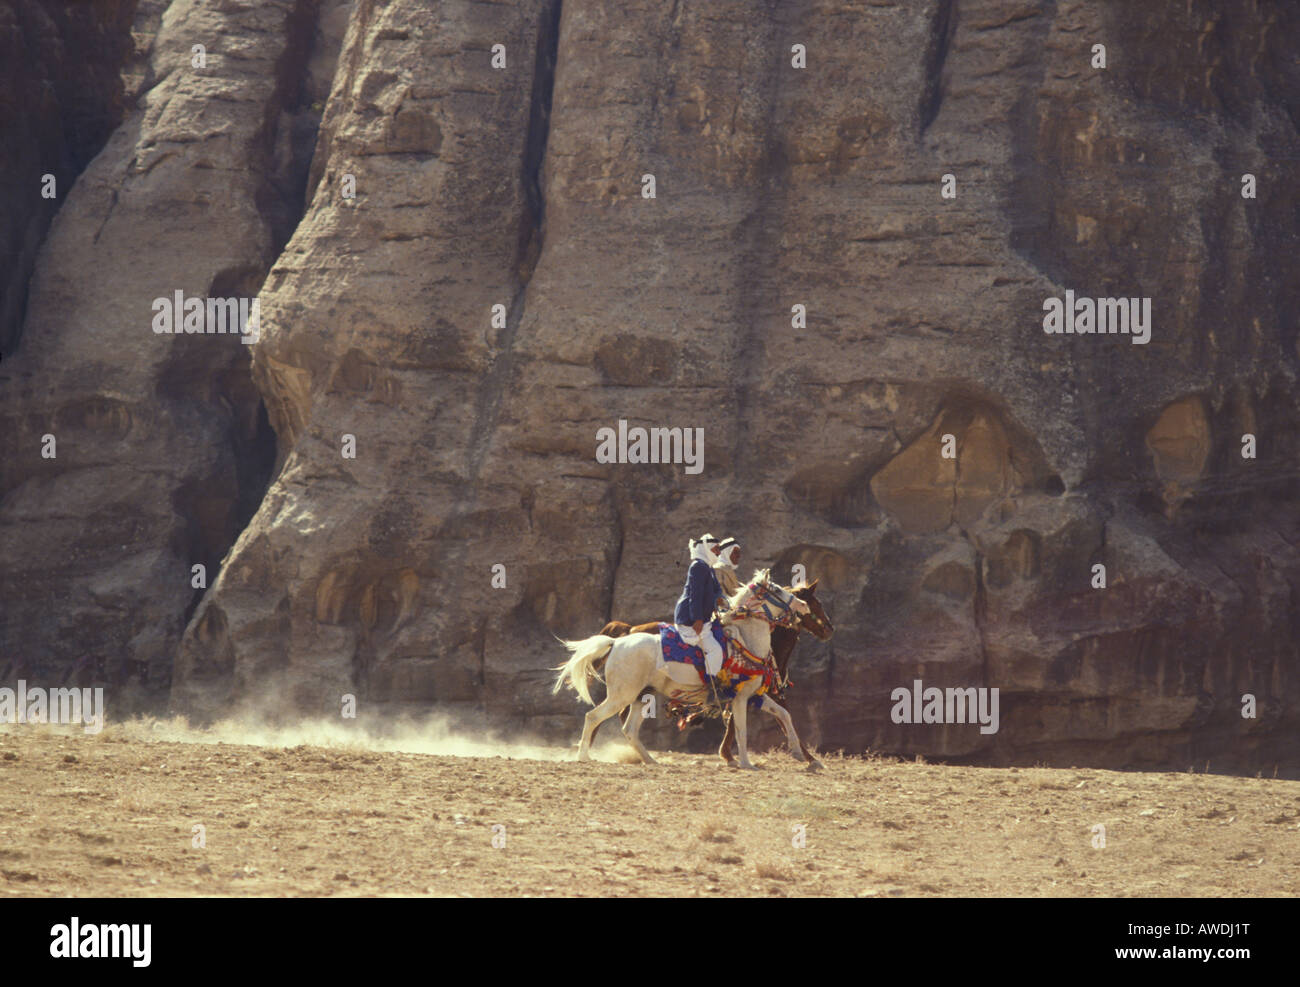 Raising dust as Arab horses and riders participate in a horse race in the Jordanian desert, near Petra, Jordan Stock Photo